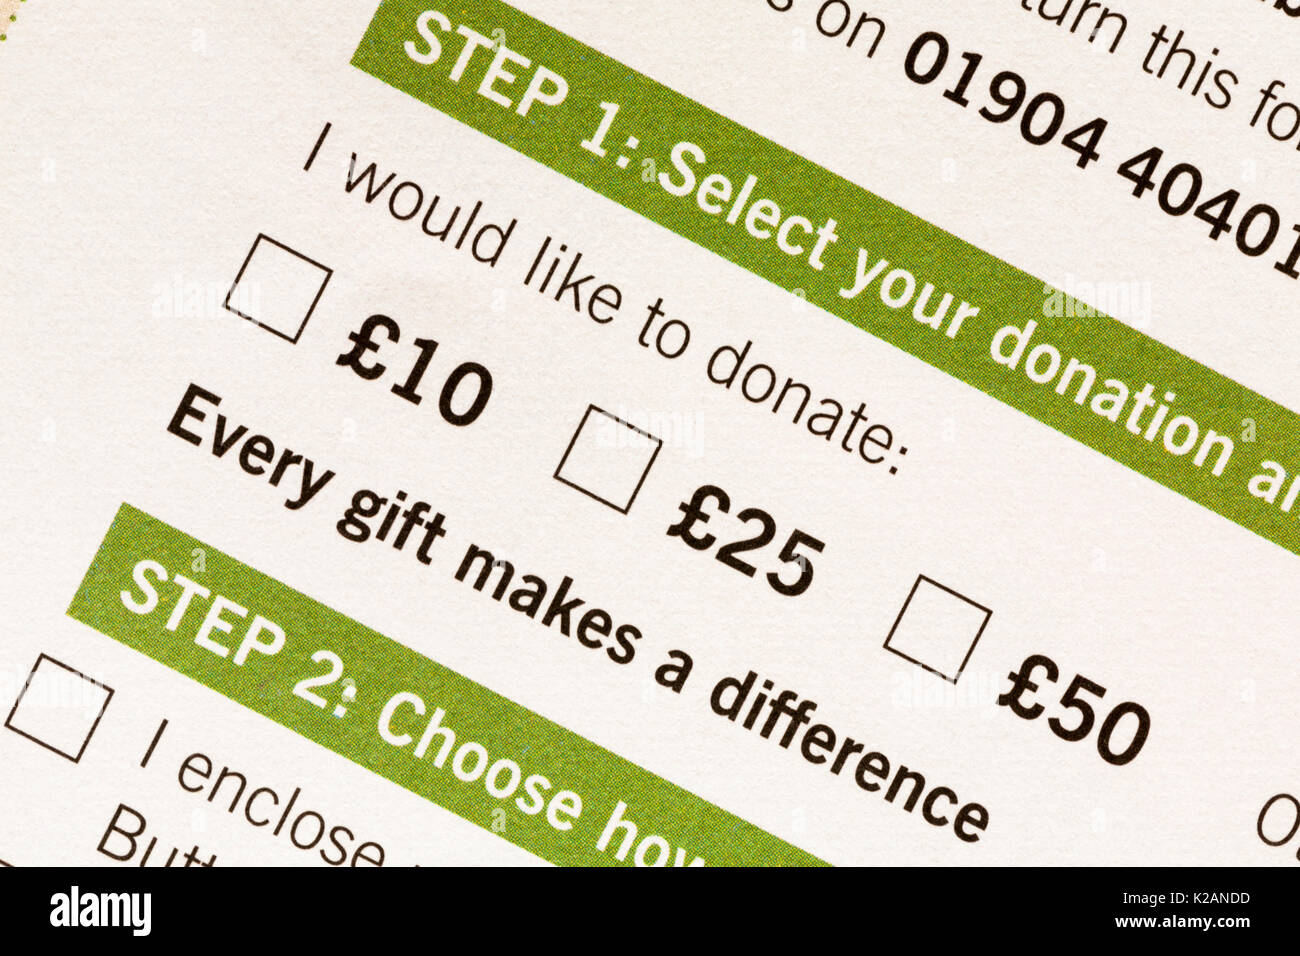 Dettaglio sulla carità modulo di donazione - Vorrei donare con caselle di spunta per £10, £25, £50 - ogni dono fa la differenza Foto Stock